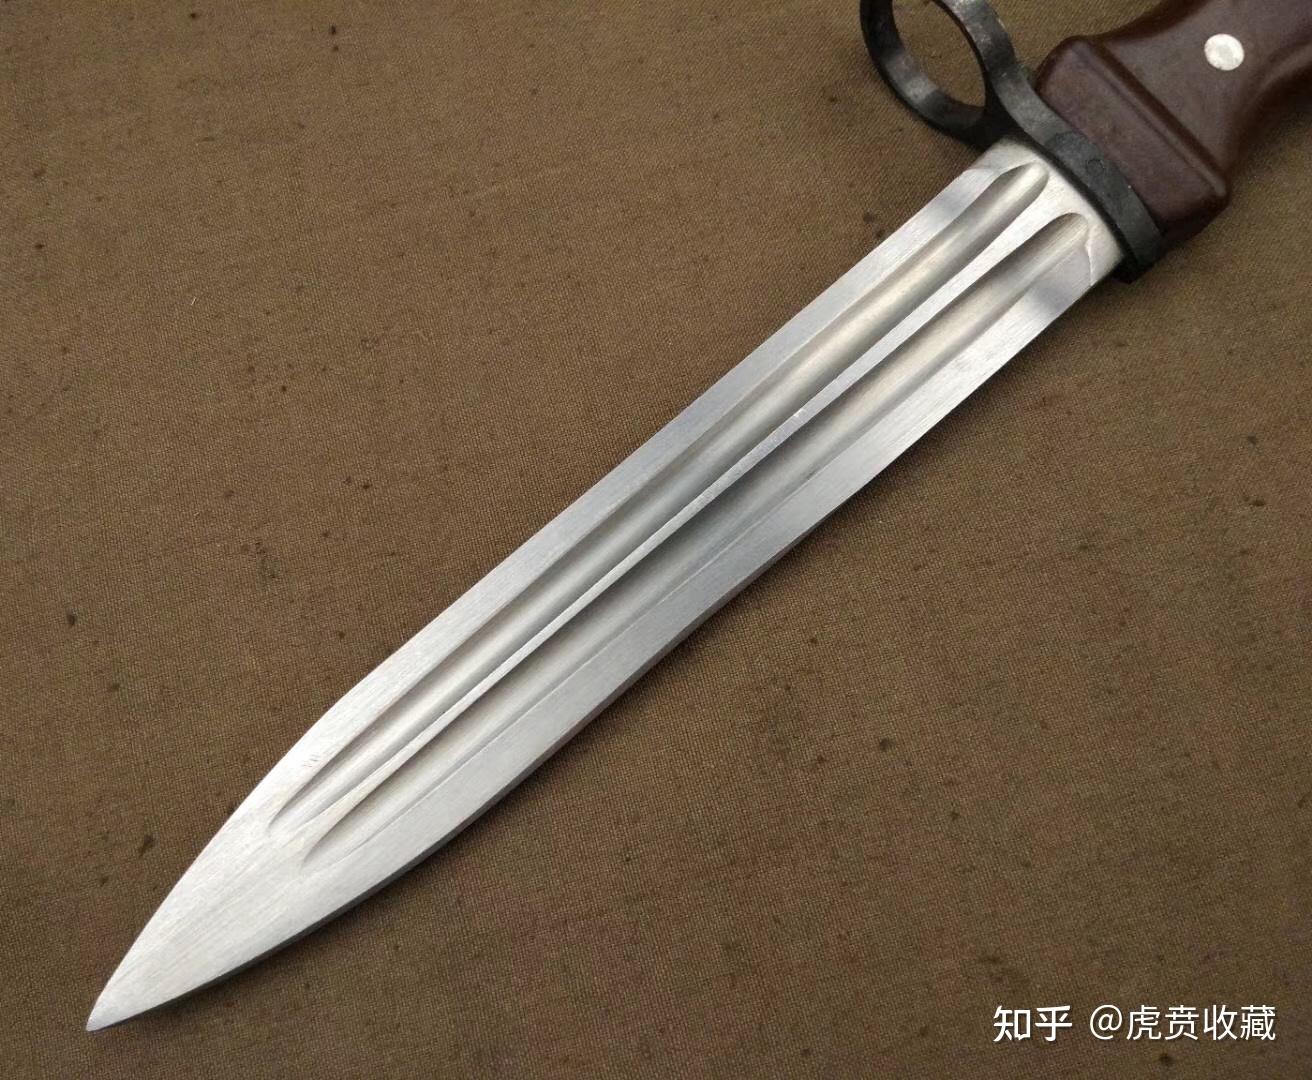 中国现役刺刀图片